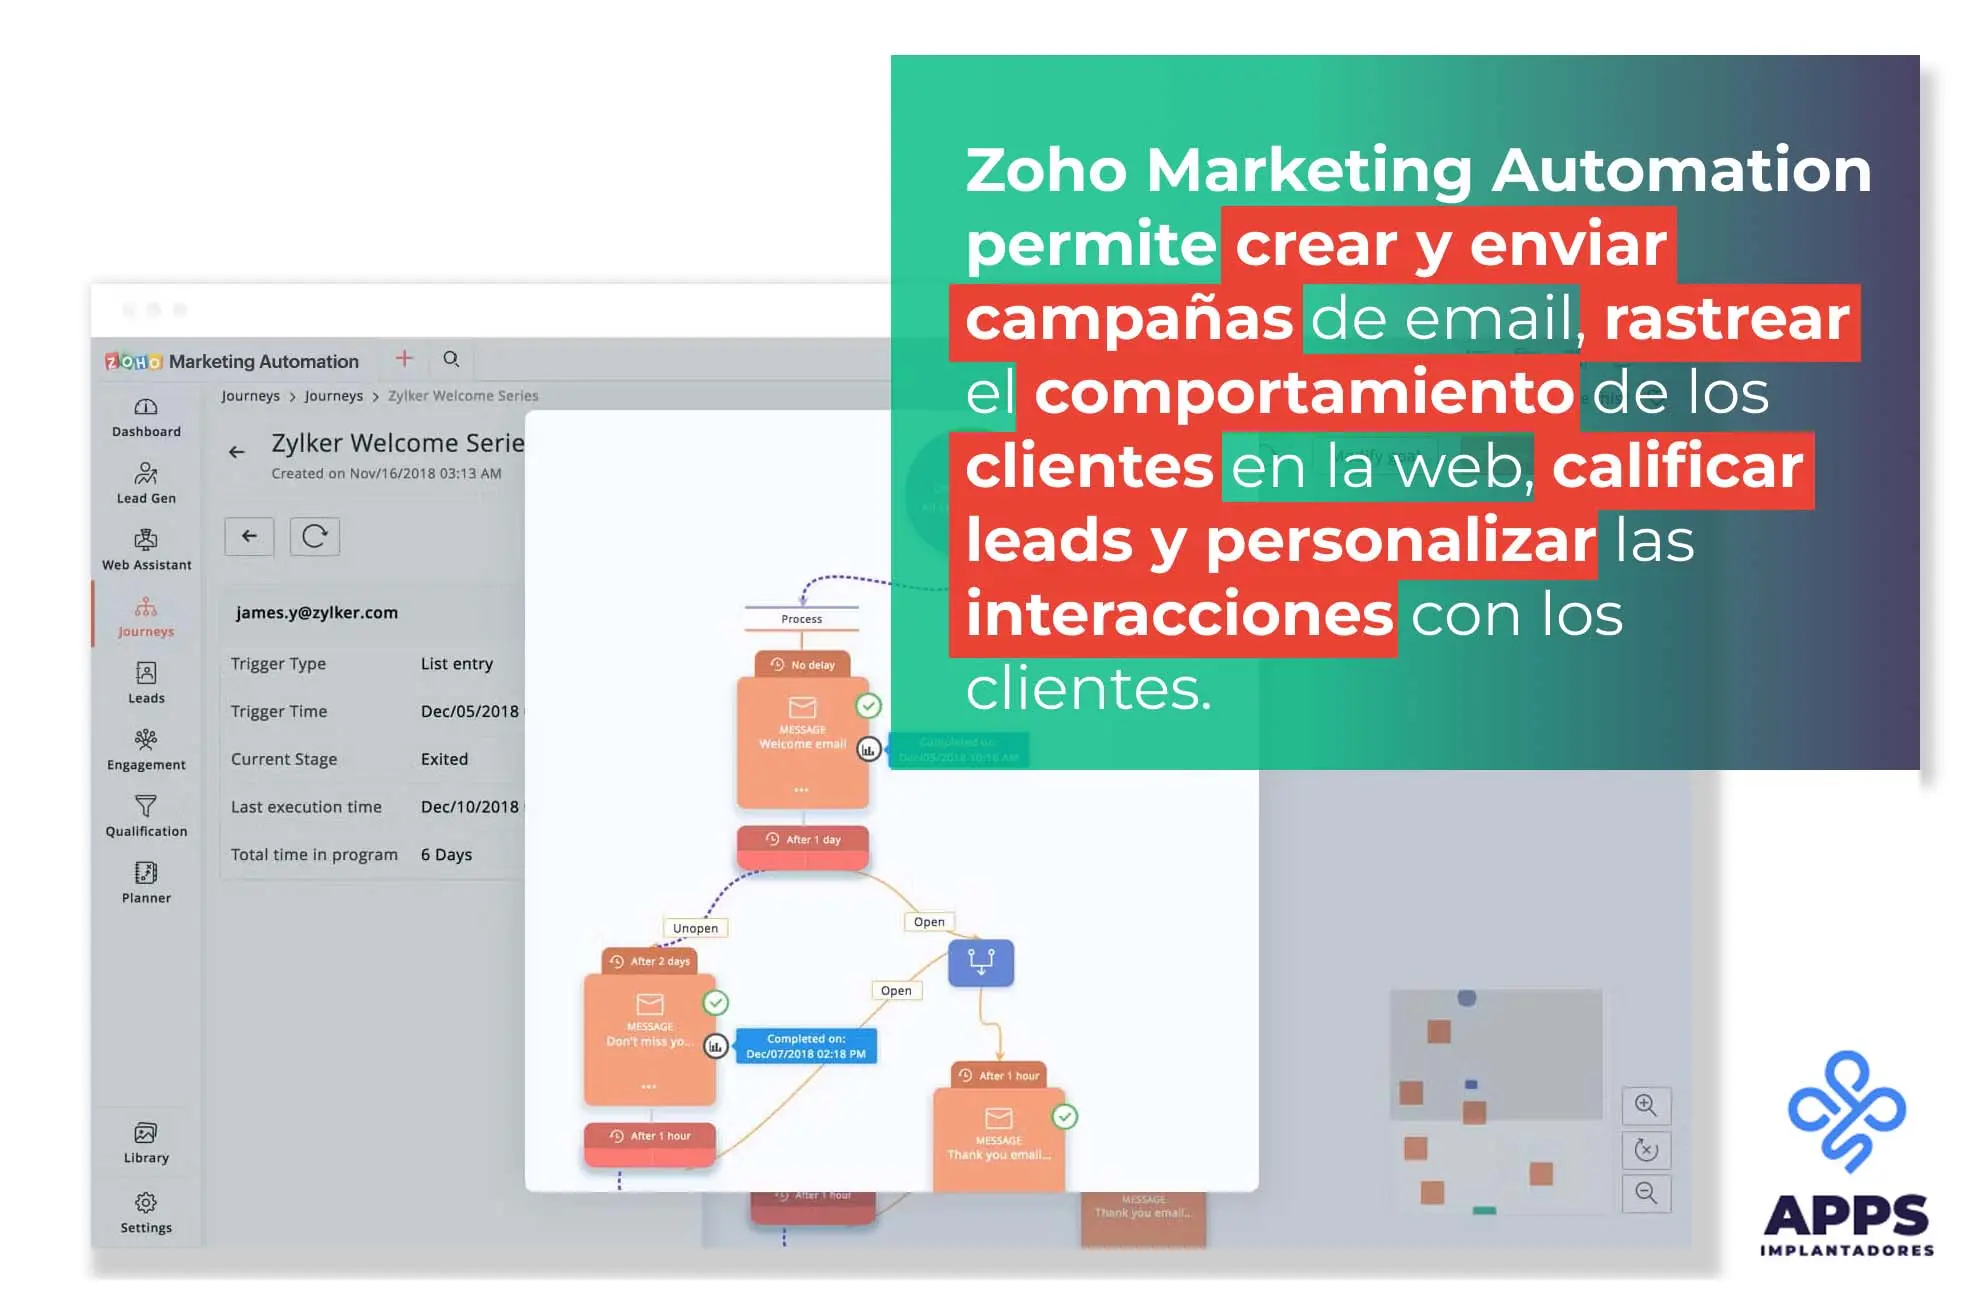 Zoho Marketing Automation permite crear y enviar campanas de email y rastrear el comportamiento de los clientes en el web